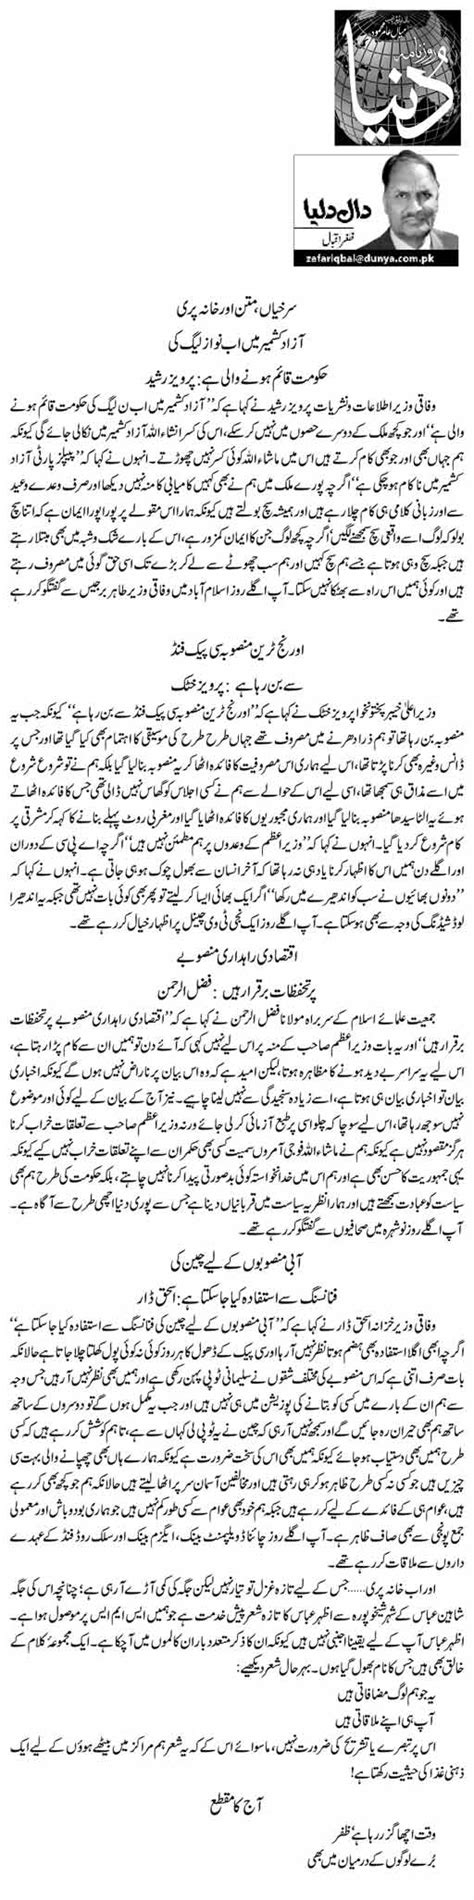 Surkhiyan Matan Aor Khana Puri 4 Zafar Iqbal Daily Urdu Columns